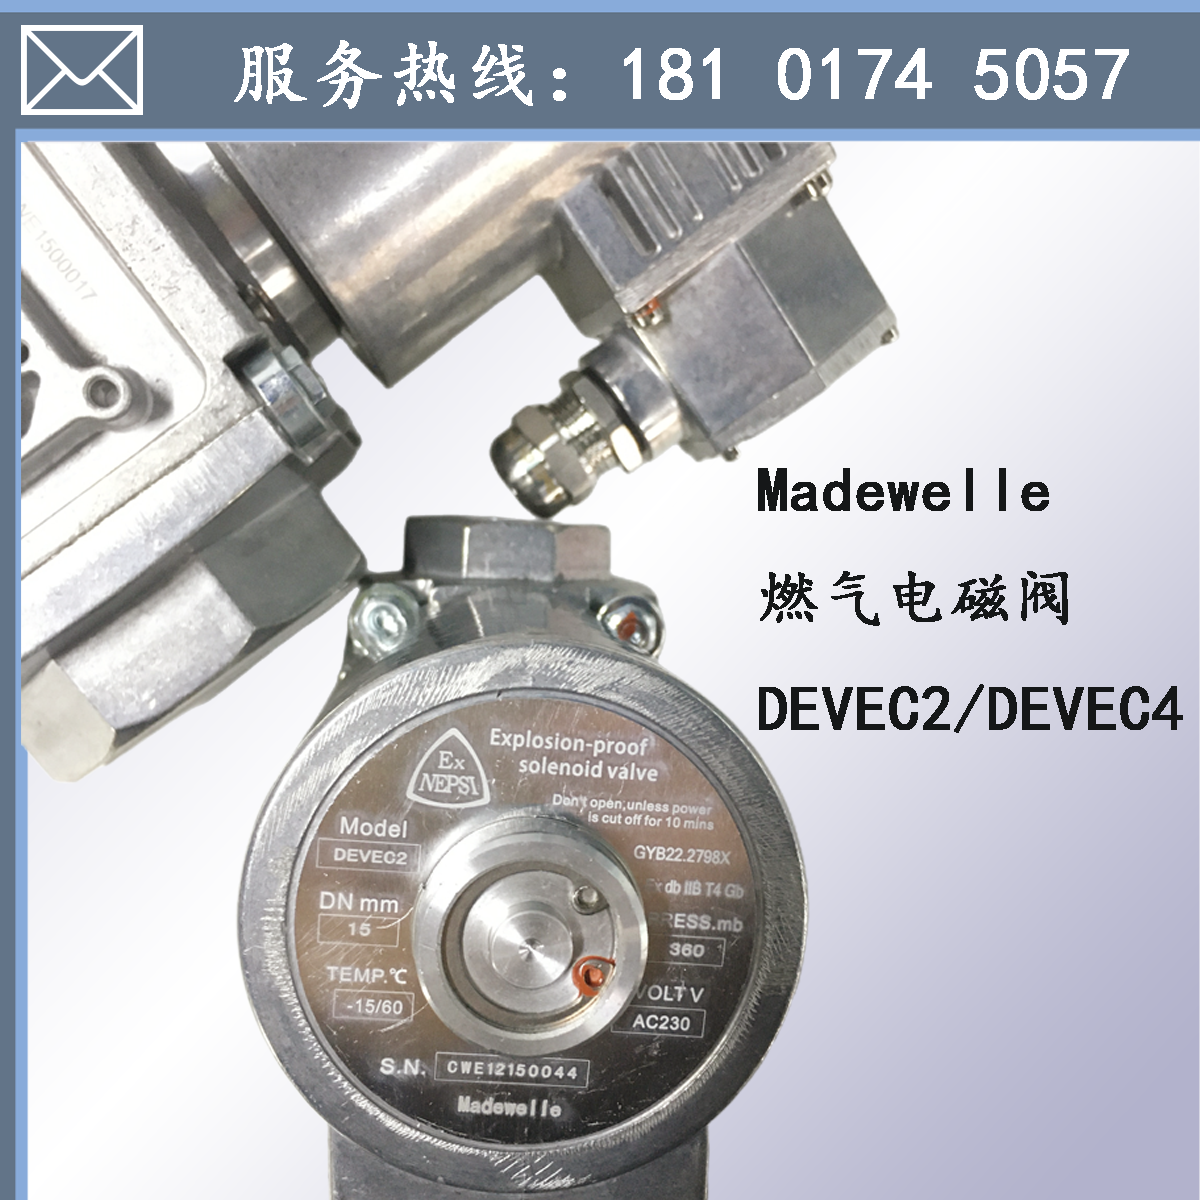 上海上海Madewelle燃气阀DEVEC2/DEVEC4防爆电磁阀